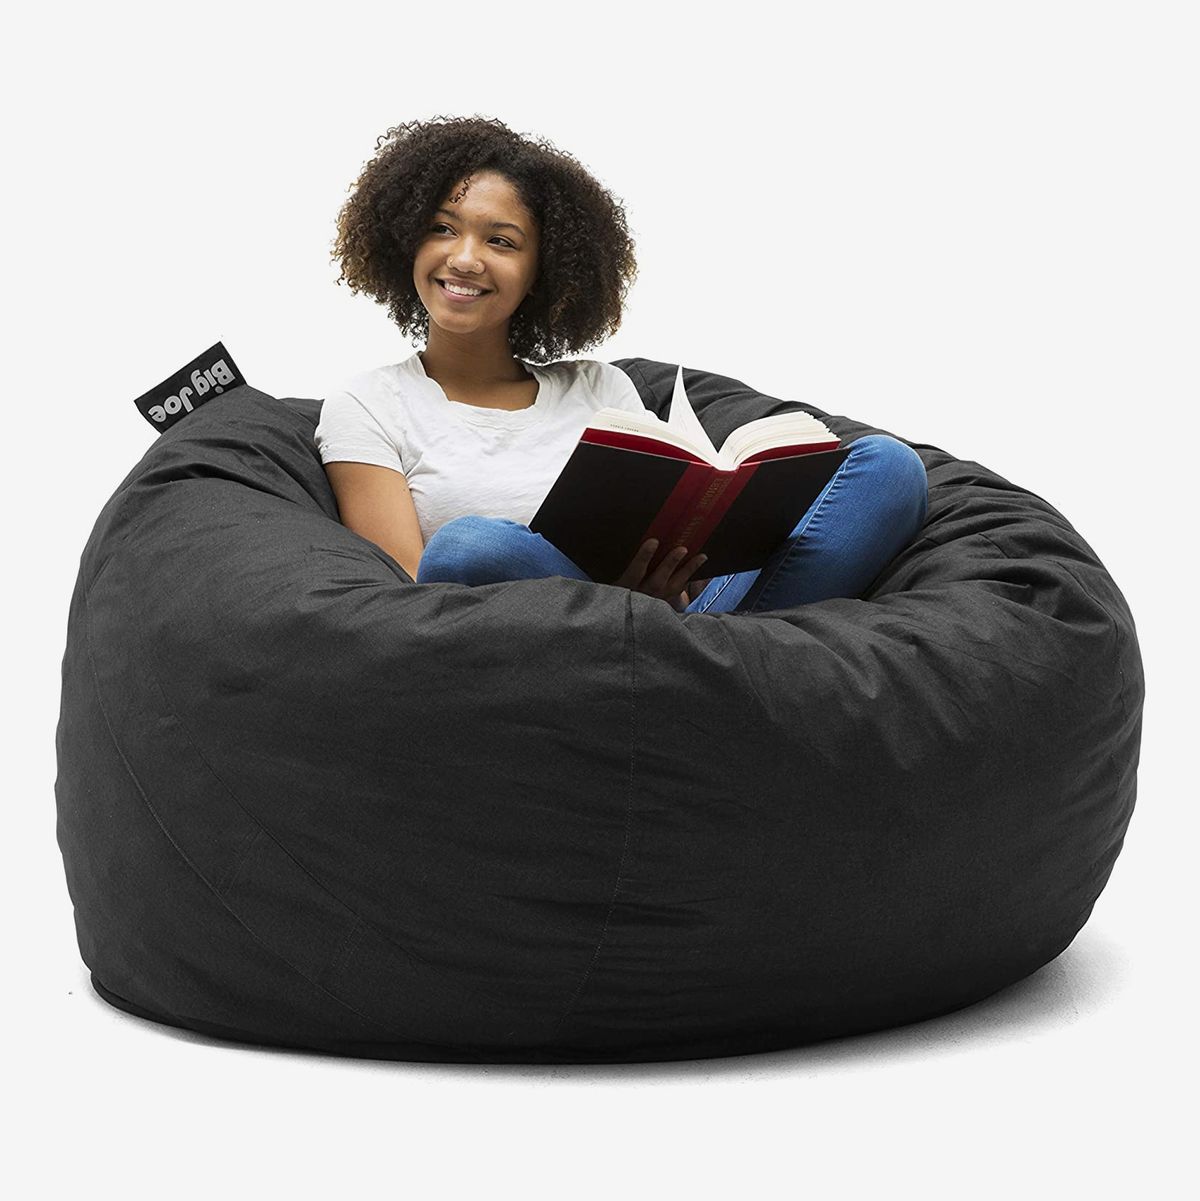 Black Cozy Sack 3-Feet Bean Bag Chair Medium 